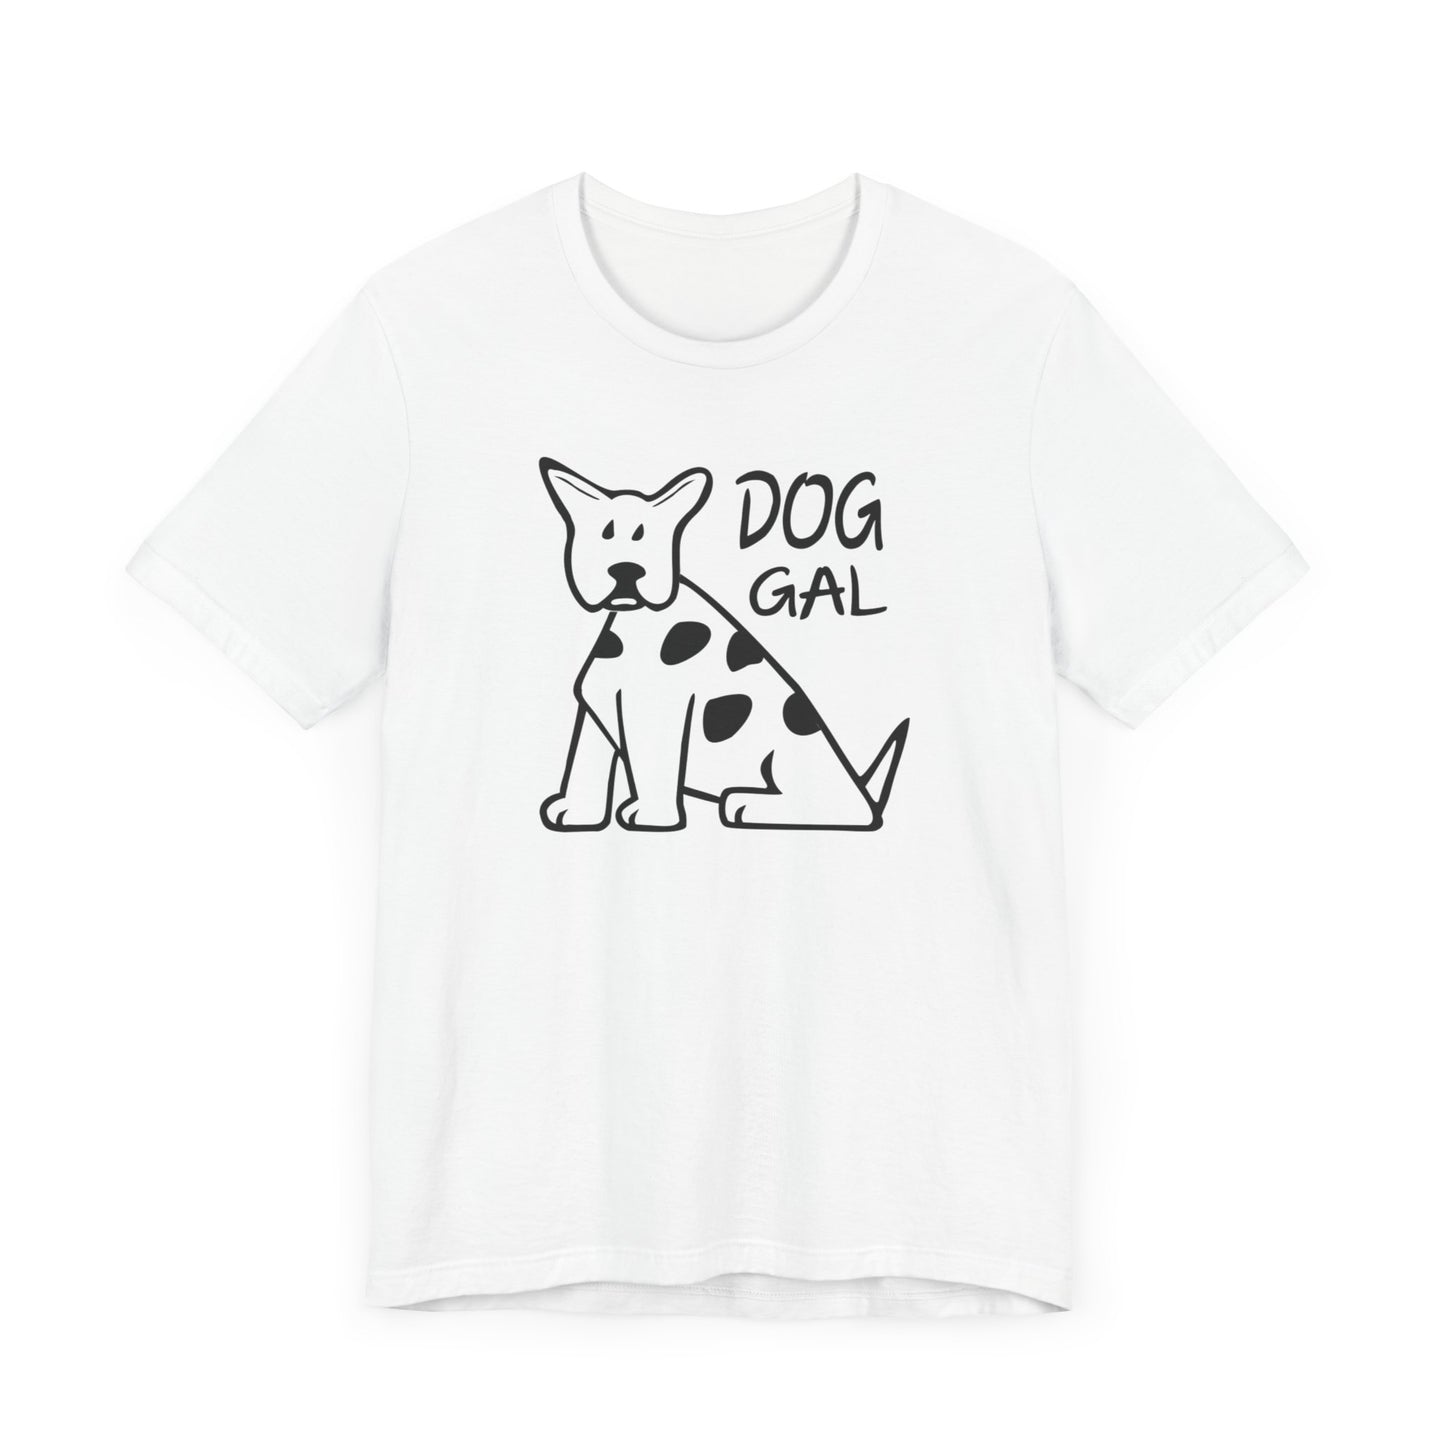 Unisex Jersey Short Sleeve Tee for Girls featuring a Cartoon Dog